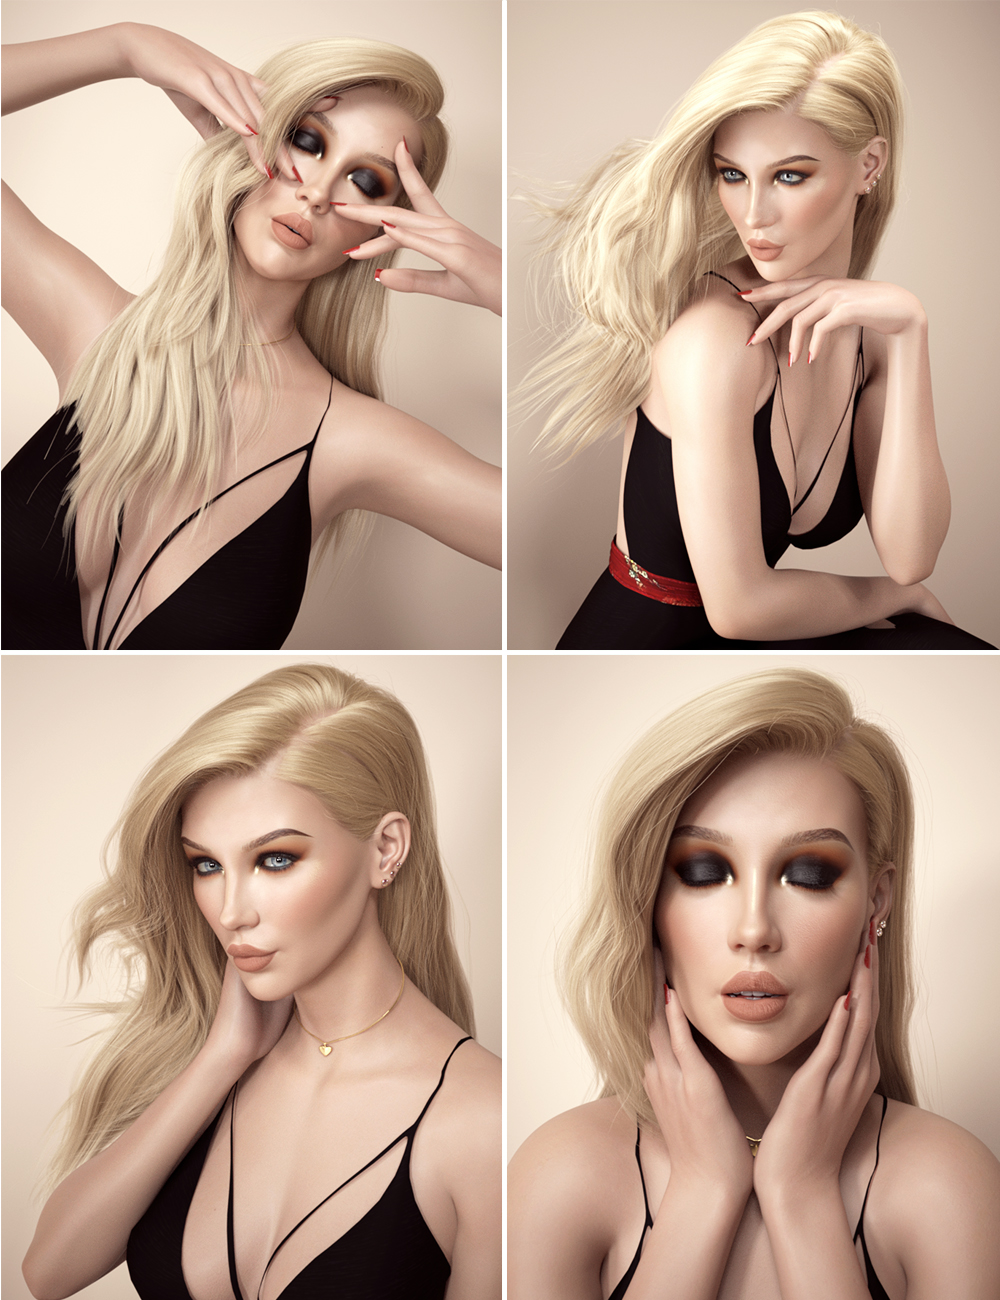 Makeup Artist Essentials L.I.E Poses and Expressions by: 3D Sugar, 3D Models by Daz 3D